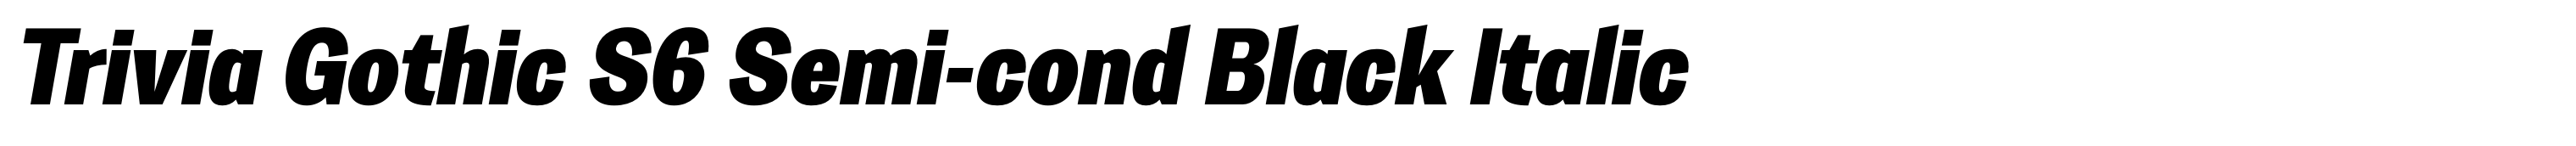 Trivia Gothic S6 Semi-cond Black Italic